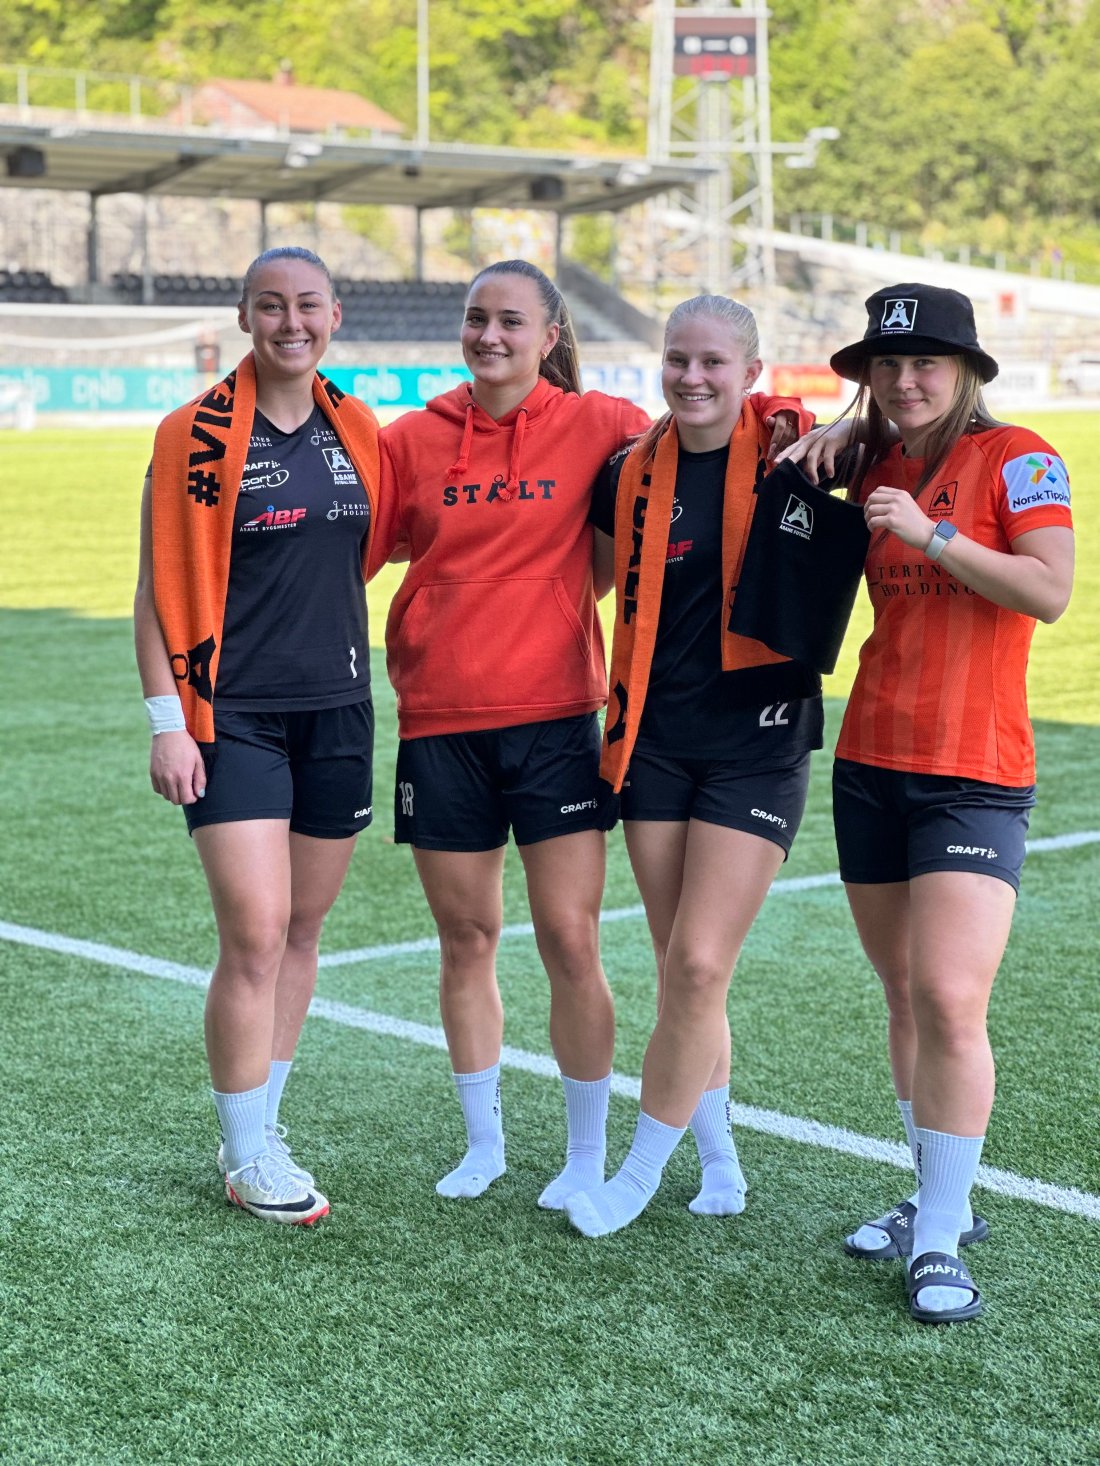 fire spillere fra Åsane fotball med merch på seg, de står sammen og smiler